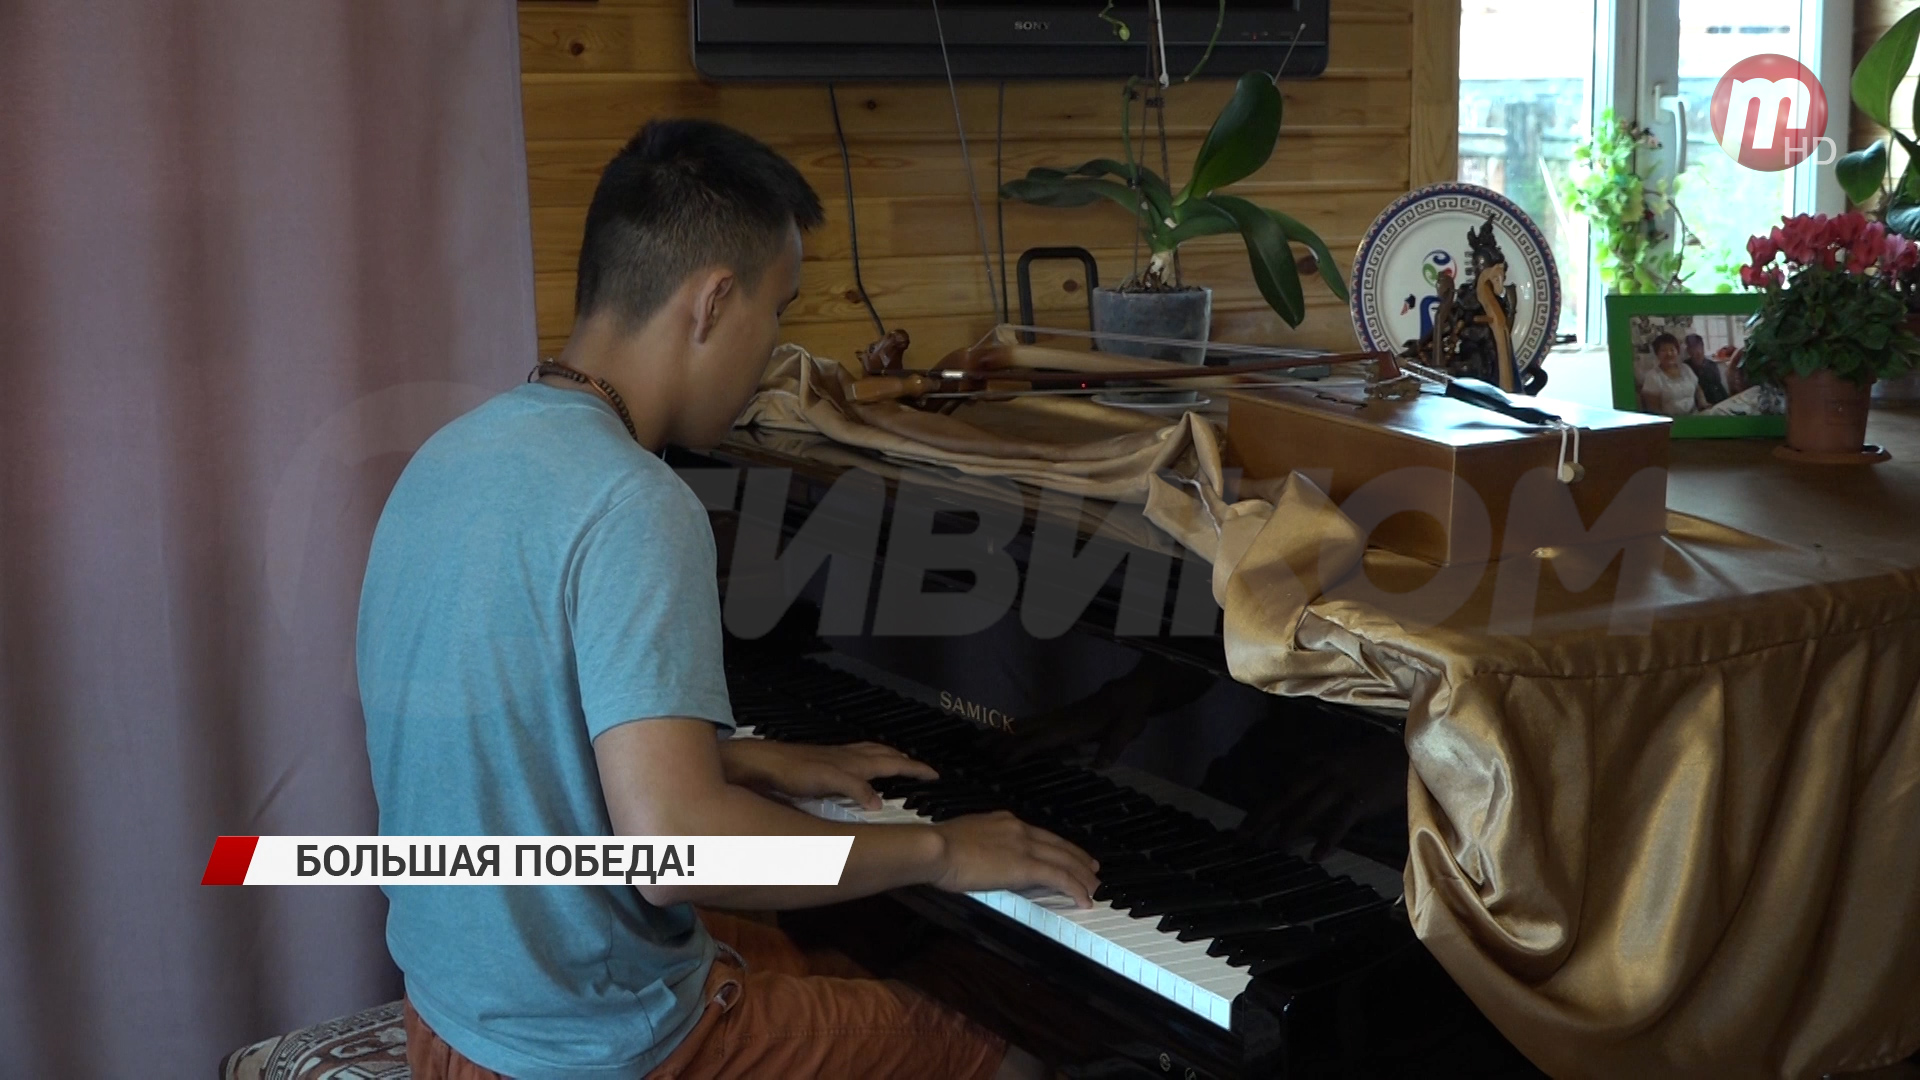 Музыкант Лудуб Очиров занял третье место во Всероссийском конкурсе молодых композиторов